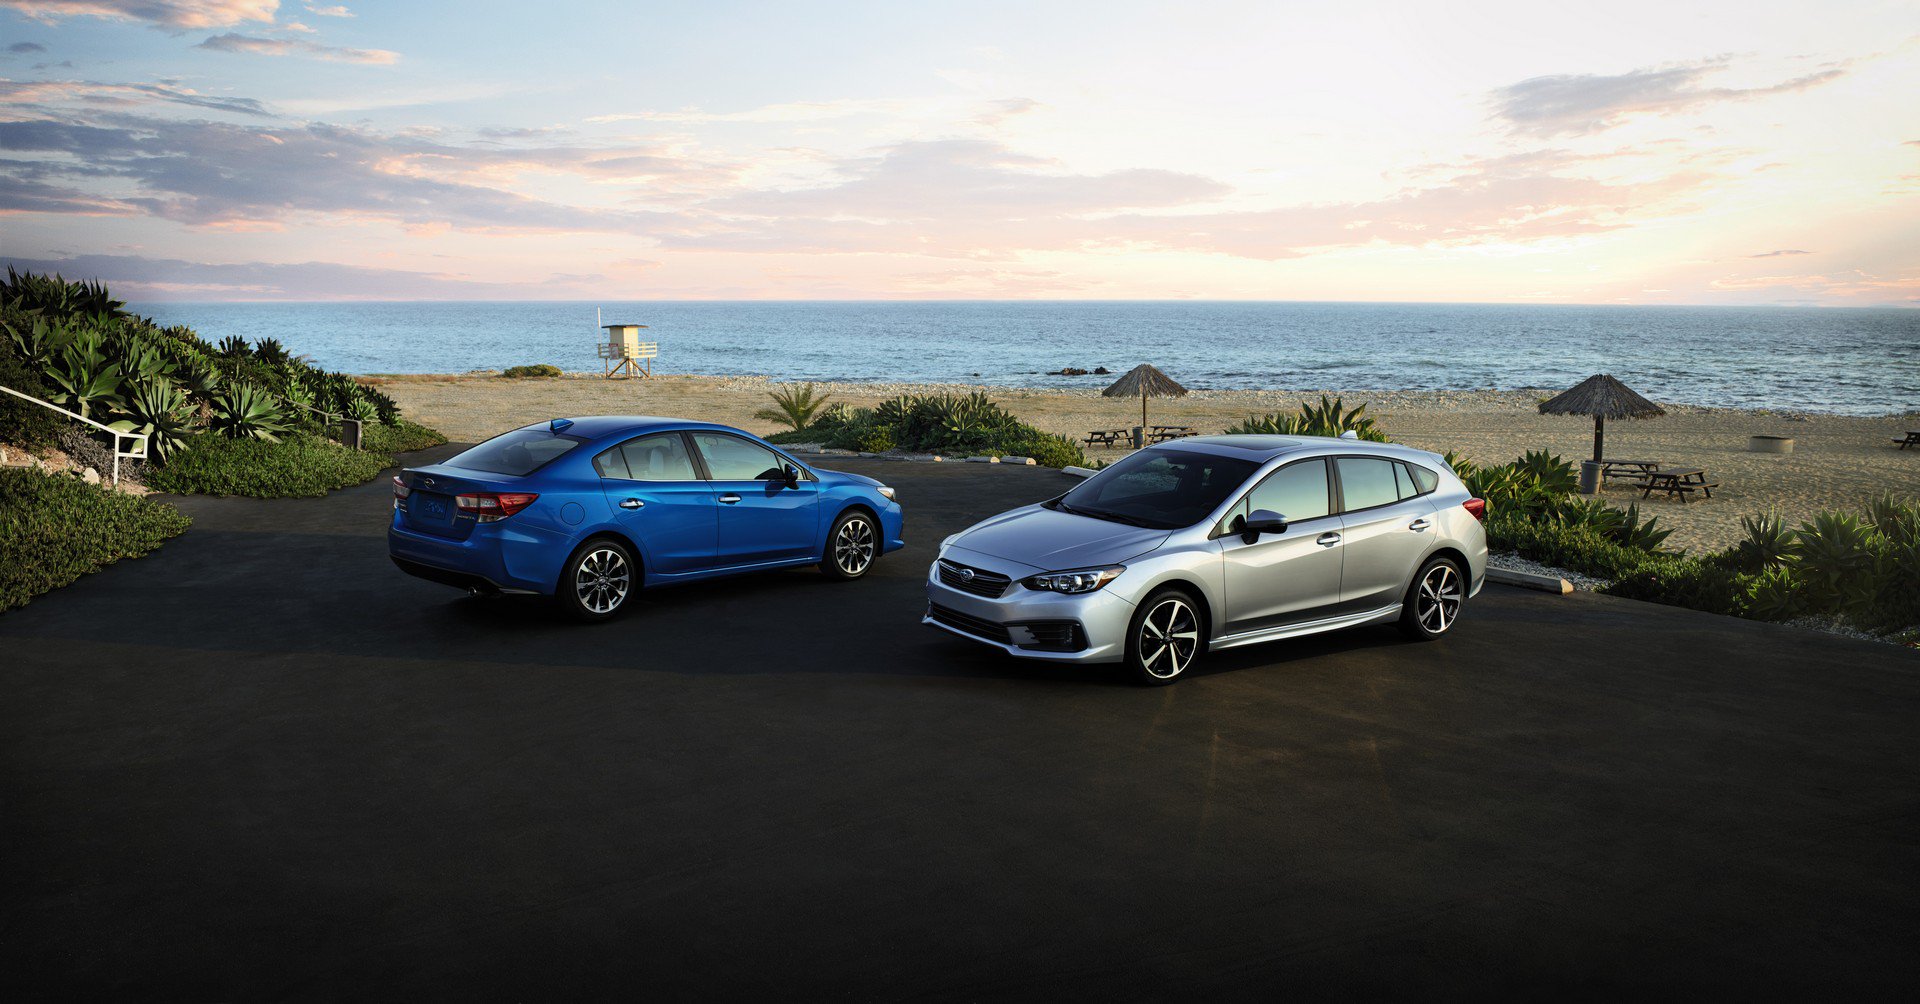 Subaru Impreza 2020 facelift na nových fotografiích